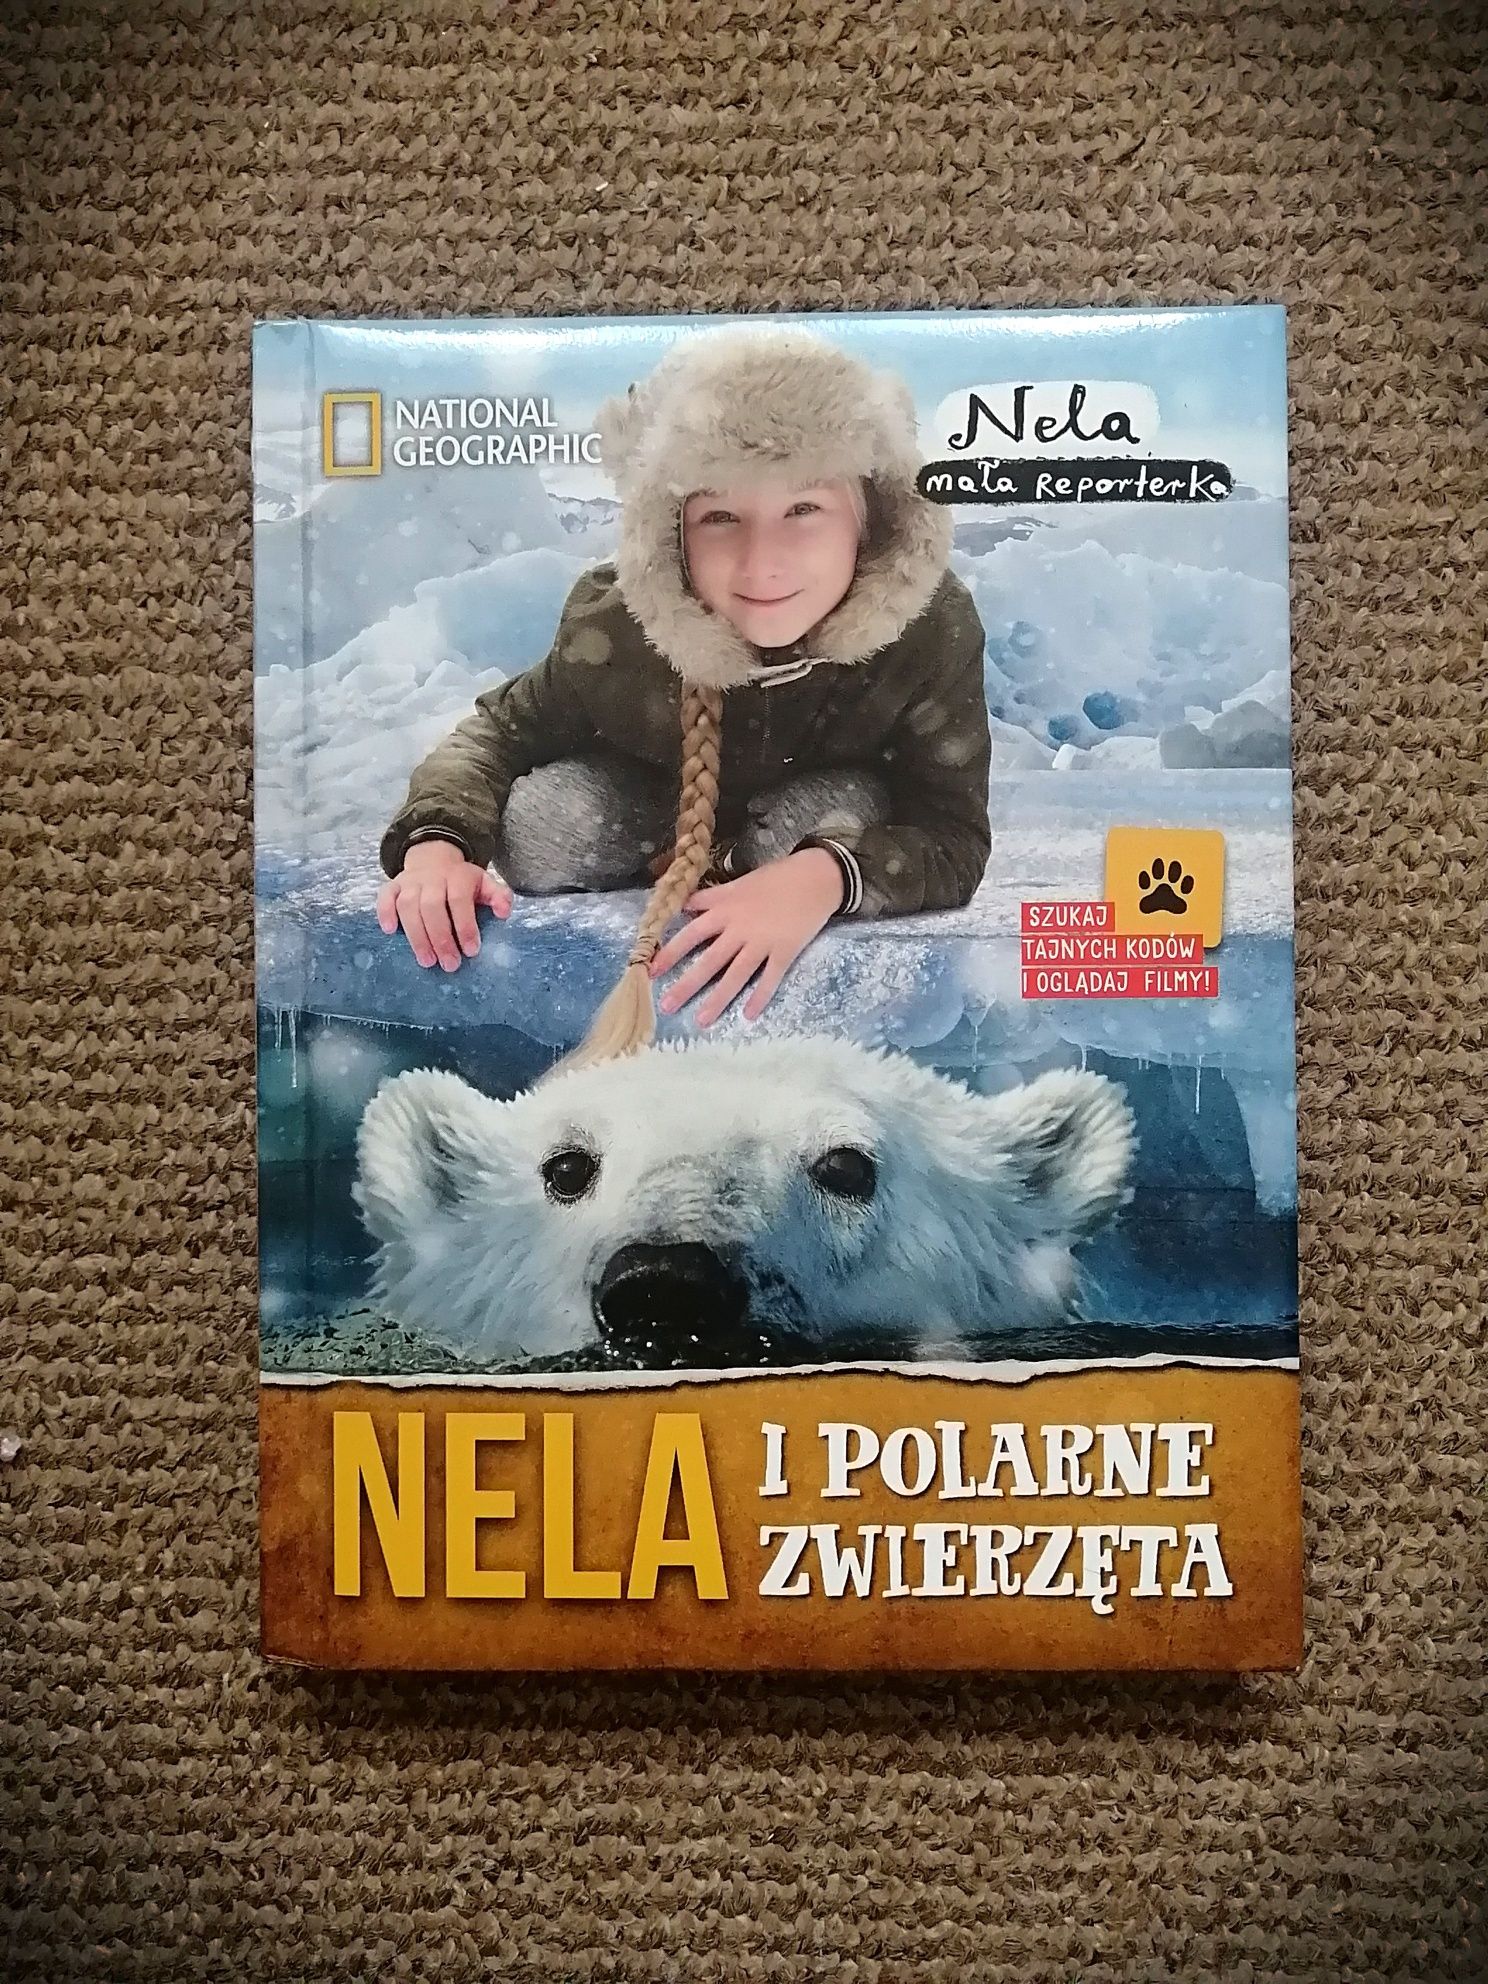 książka "Nela mała reporterka" cz. 9 "Nela i polarne zwierzęta"